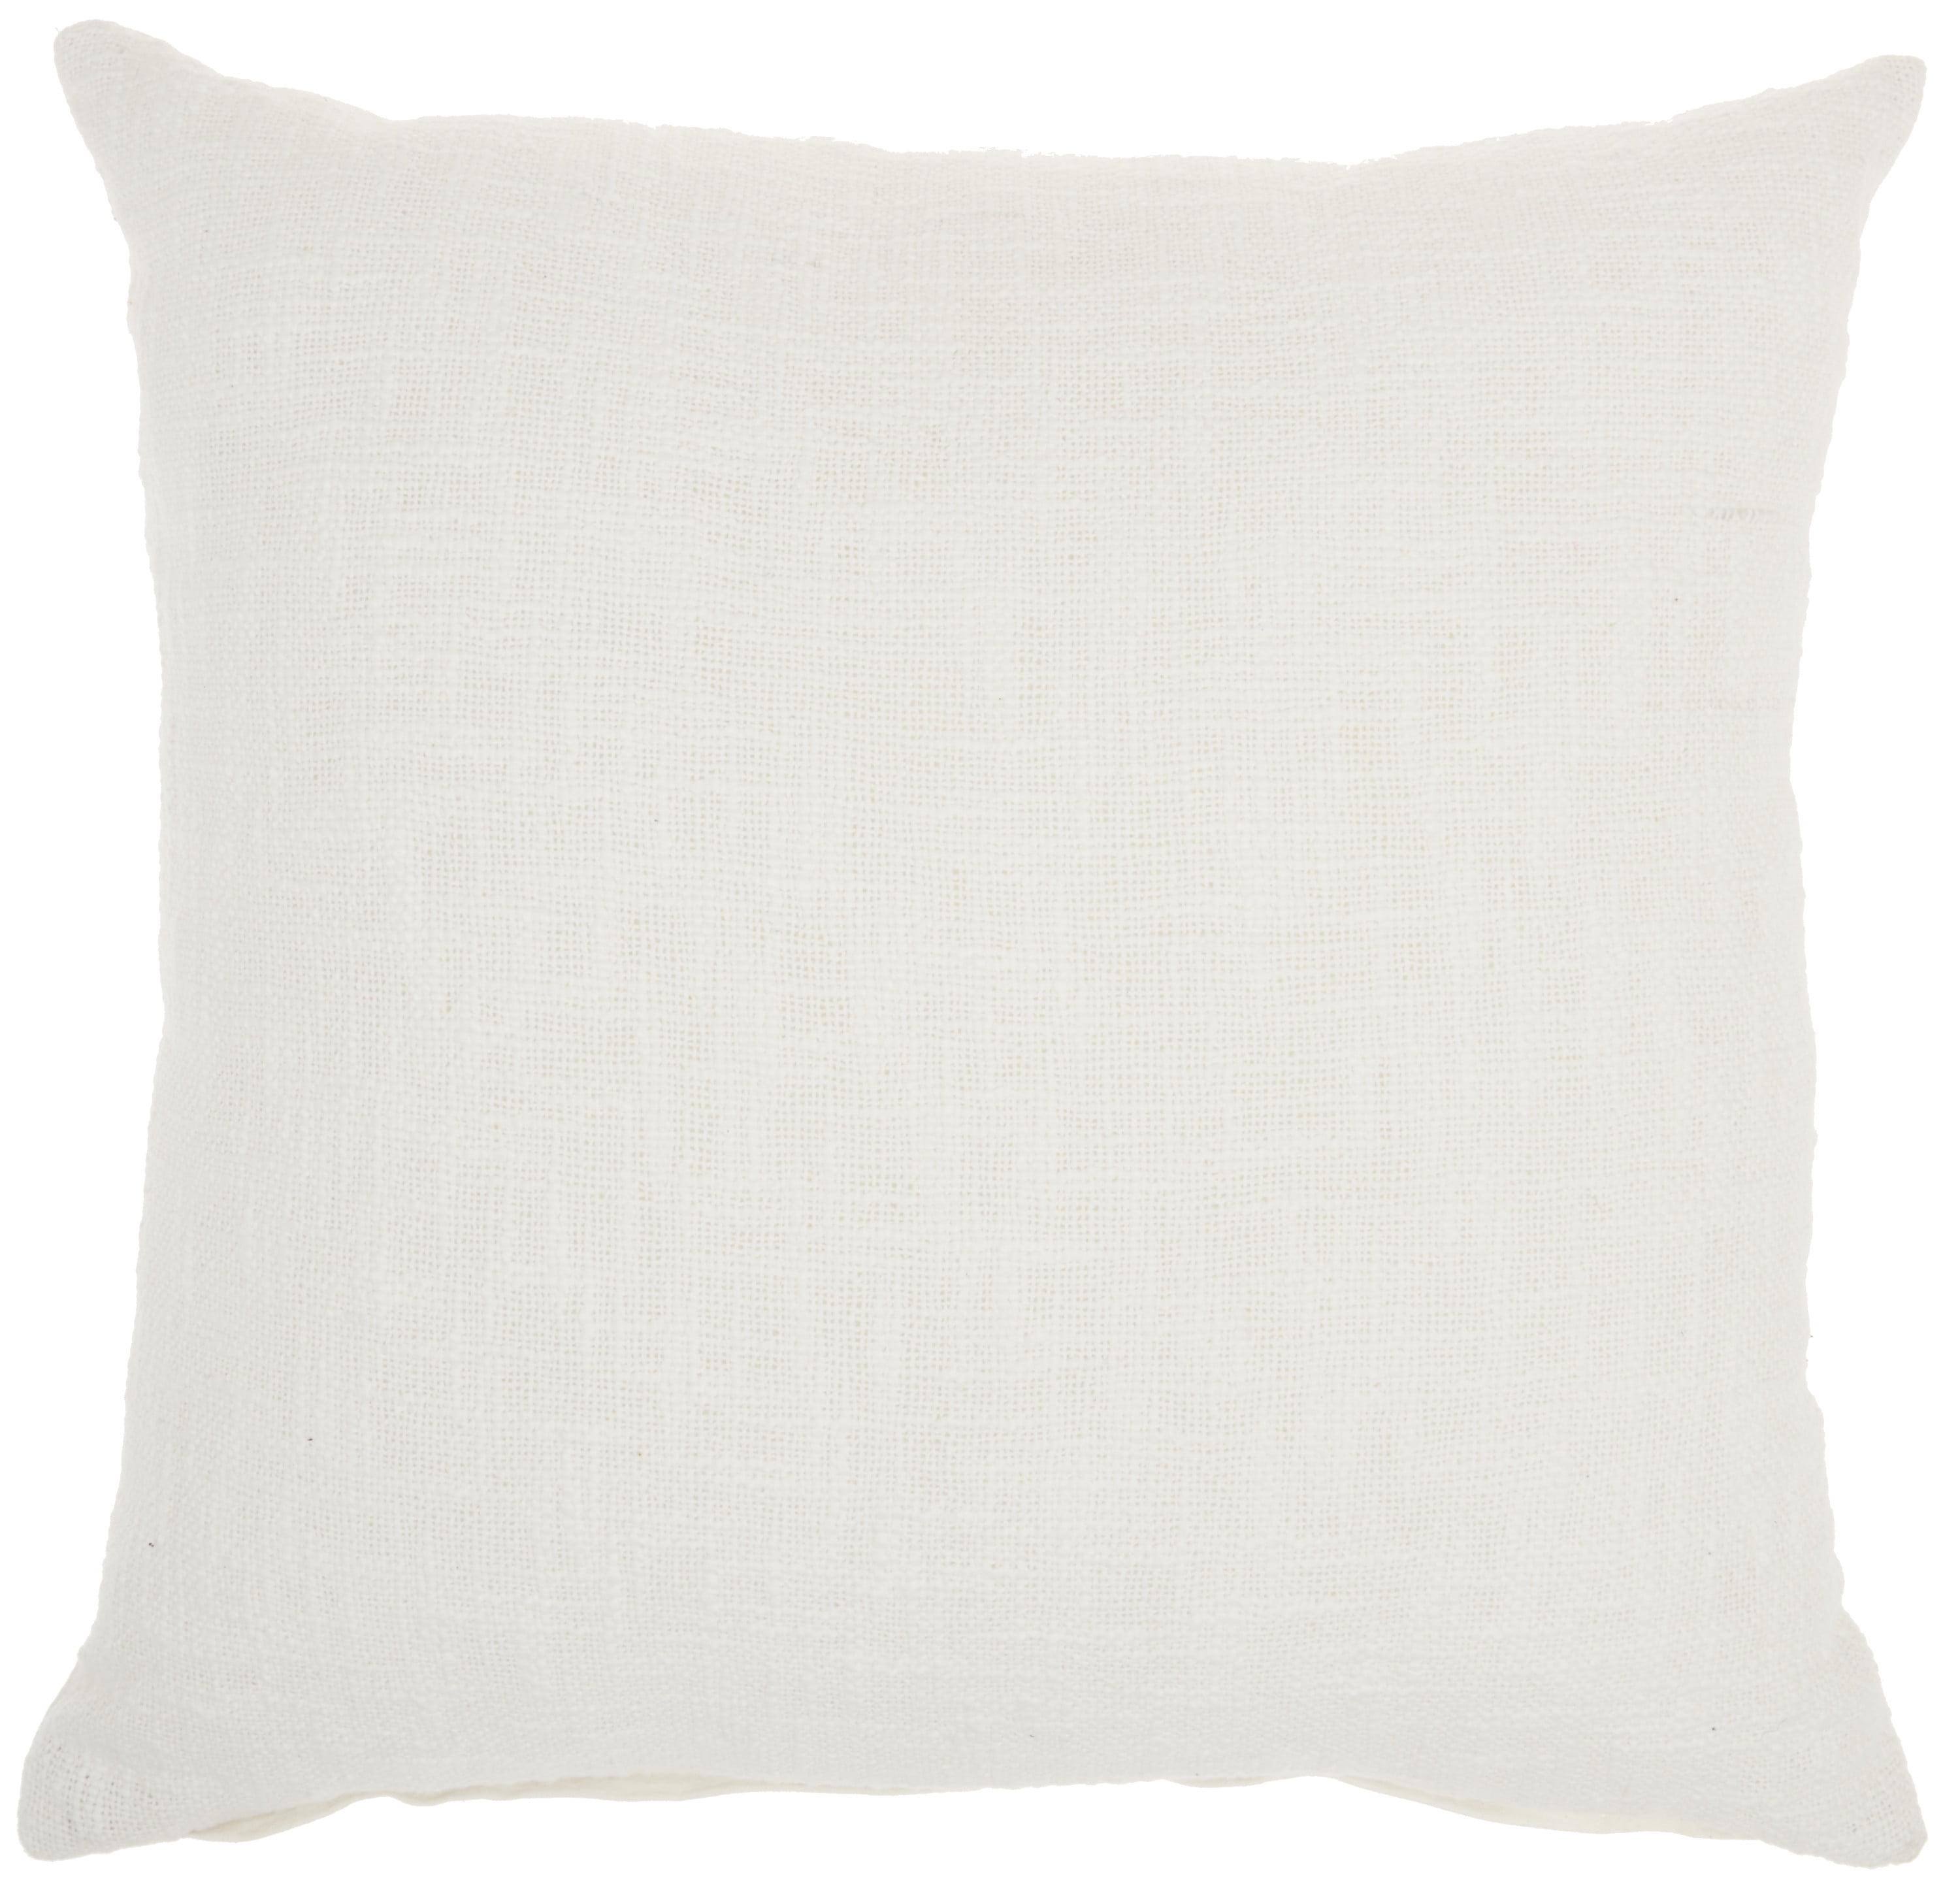 Classic White Woven Cotton 18" Square Throw Pillow